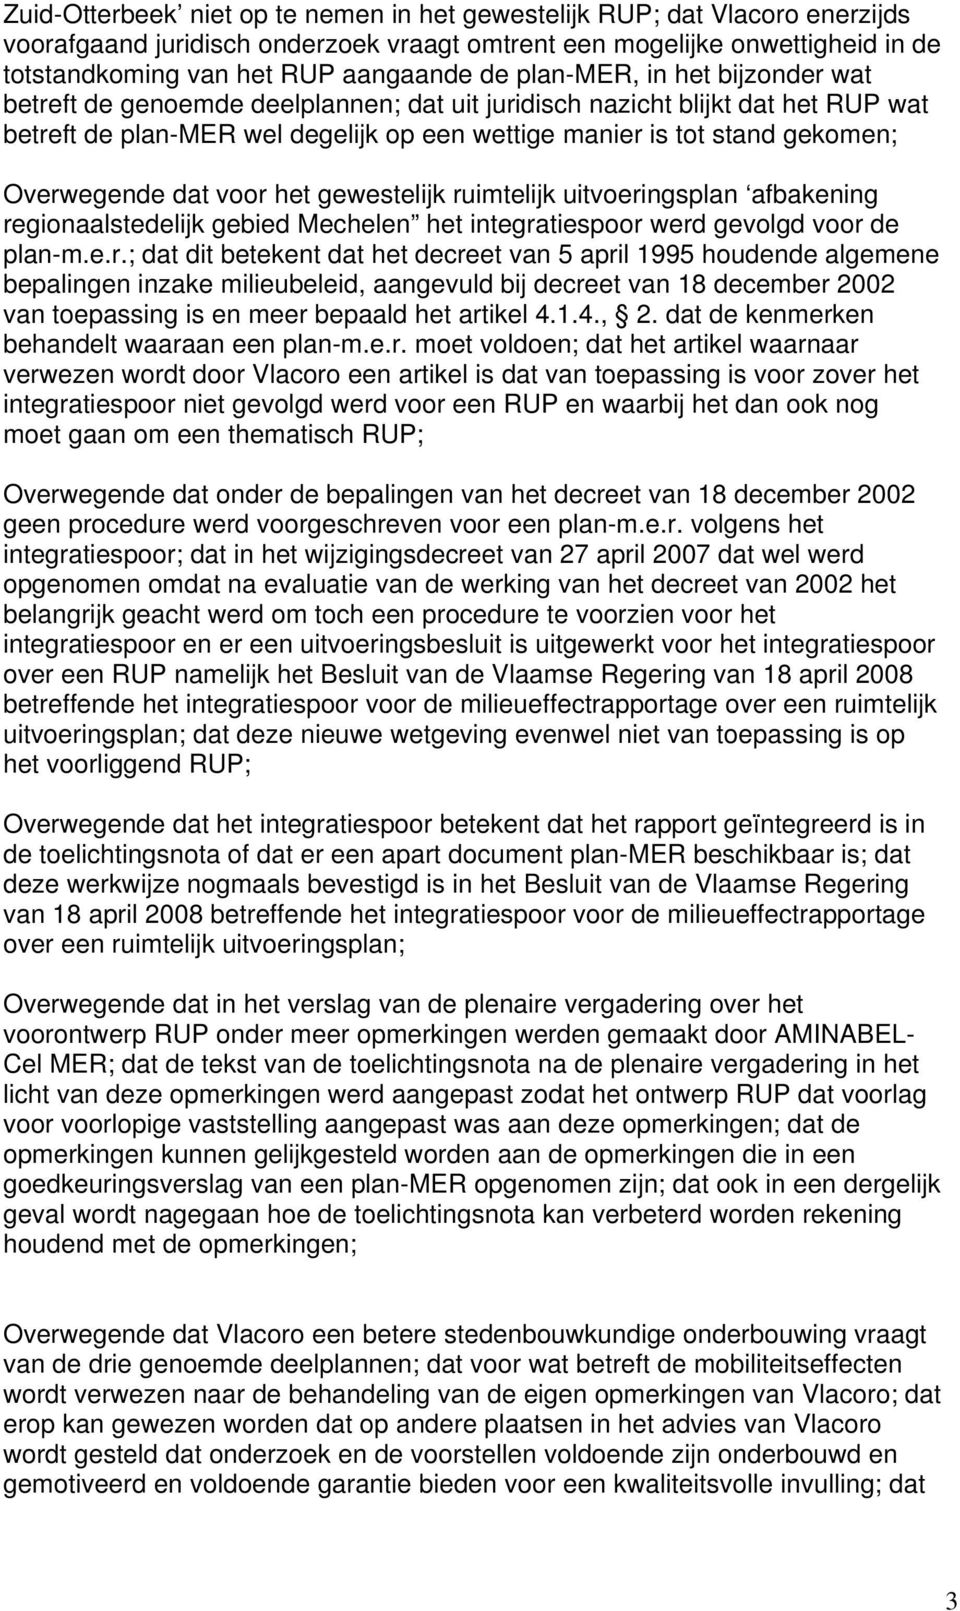 Overwegende dat voor het gewestelijk ruimtelijk uitvoeringsplan afbakening regionaalstedelijk gebied Mechelen het integratiespoor werd gevolgd voor de plan-m.e.r.; dat dit betekent dat het decreet van 5 april 1995 houdende algemene bepalingen inzake milieubeleid, aangevuld bij decreet van 18 december 2002 van toepassing is en meer bepaald het artikel 4.